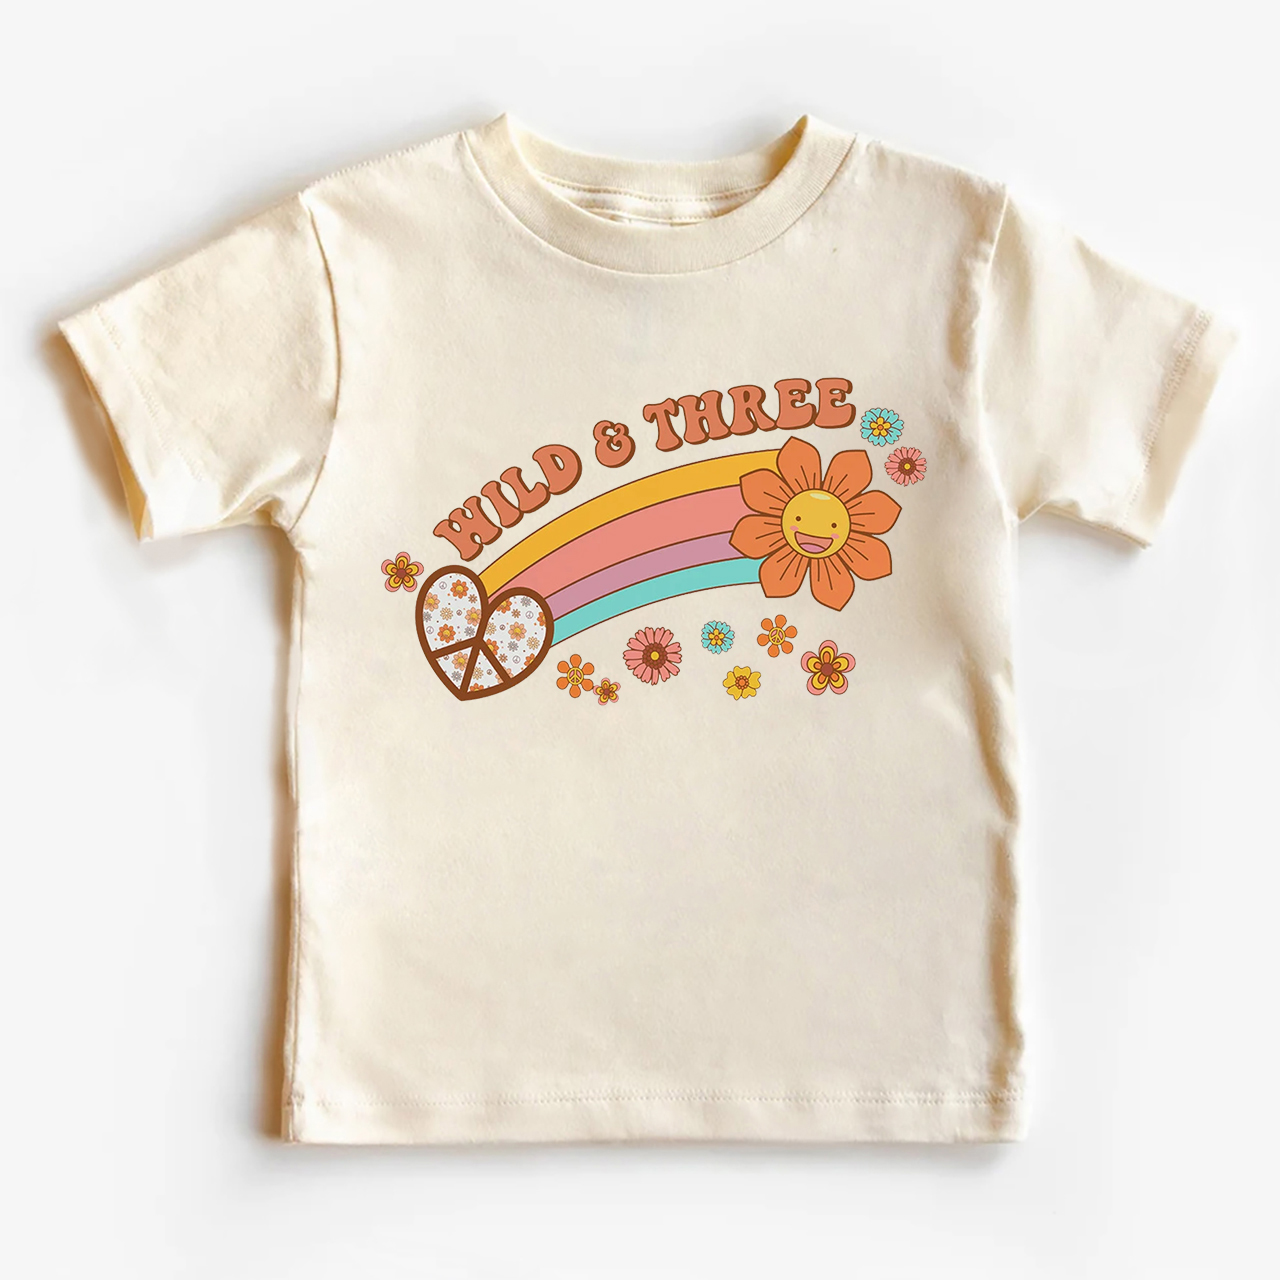 Wild&Three Birthday Shirt For Kids